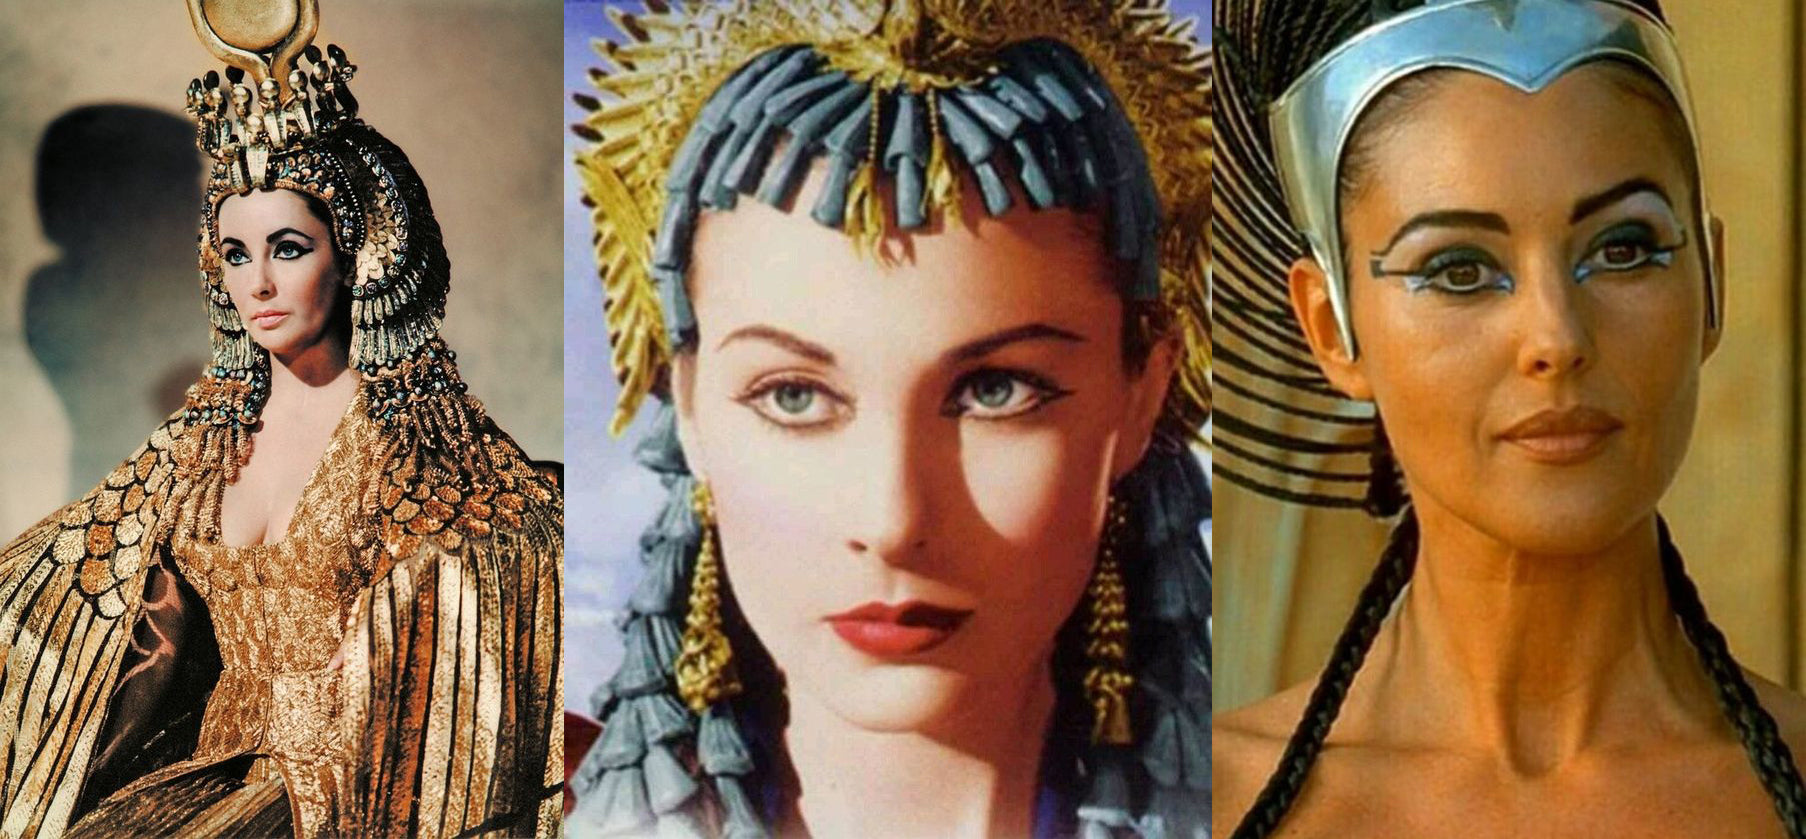 Cléopâtre était-elle une blonde aux yeux bleus? – Allez savoir!